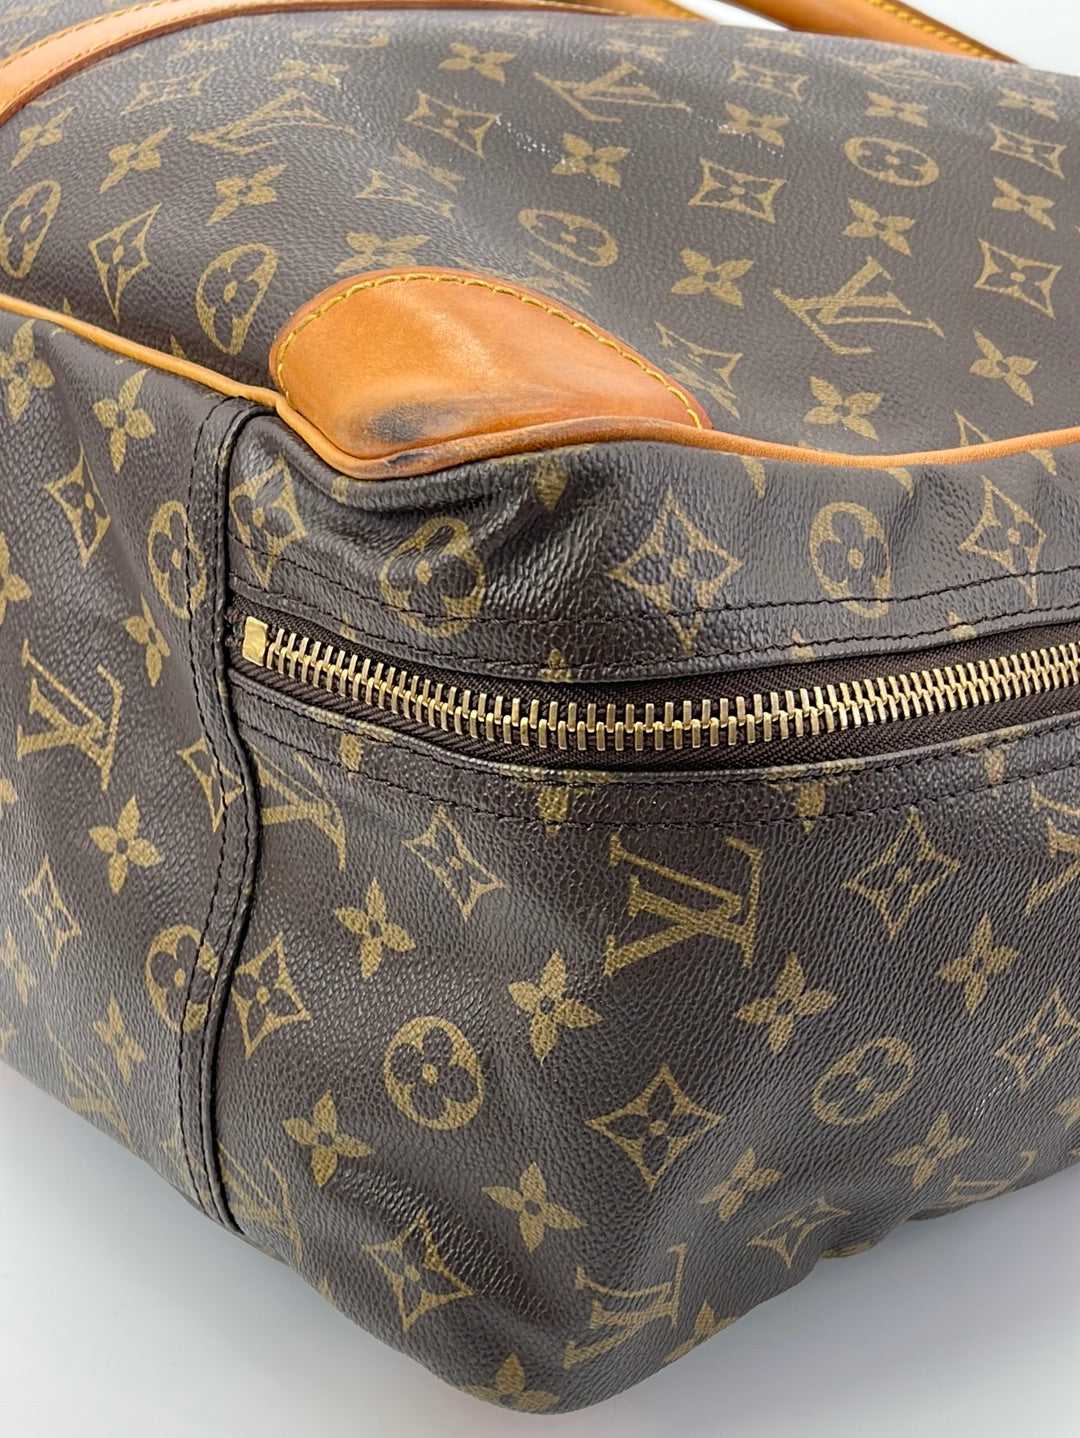 Vintage Louis Vuitton Excursion Bag - Brown (A)